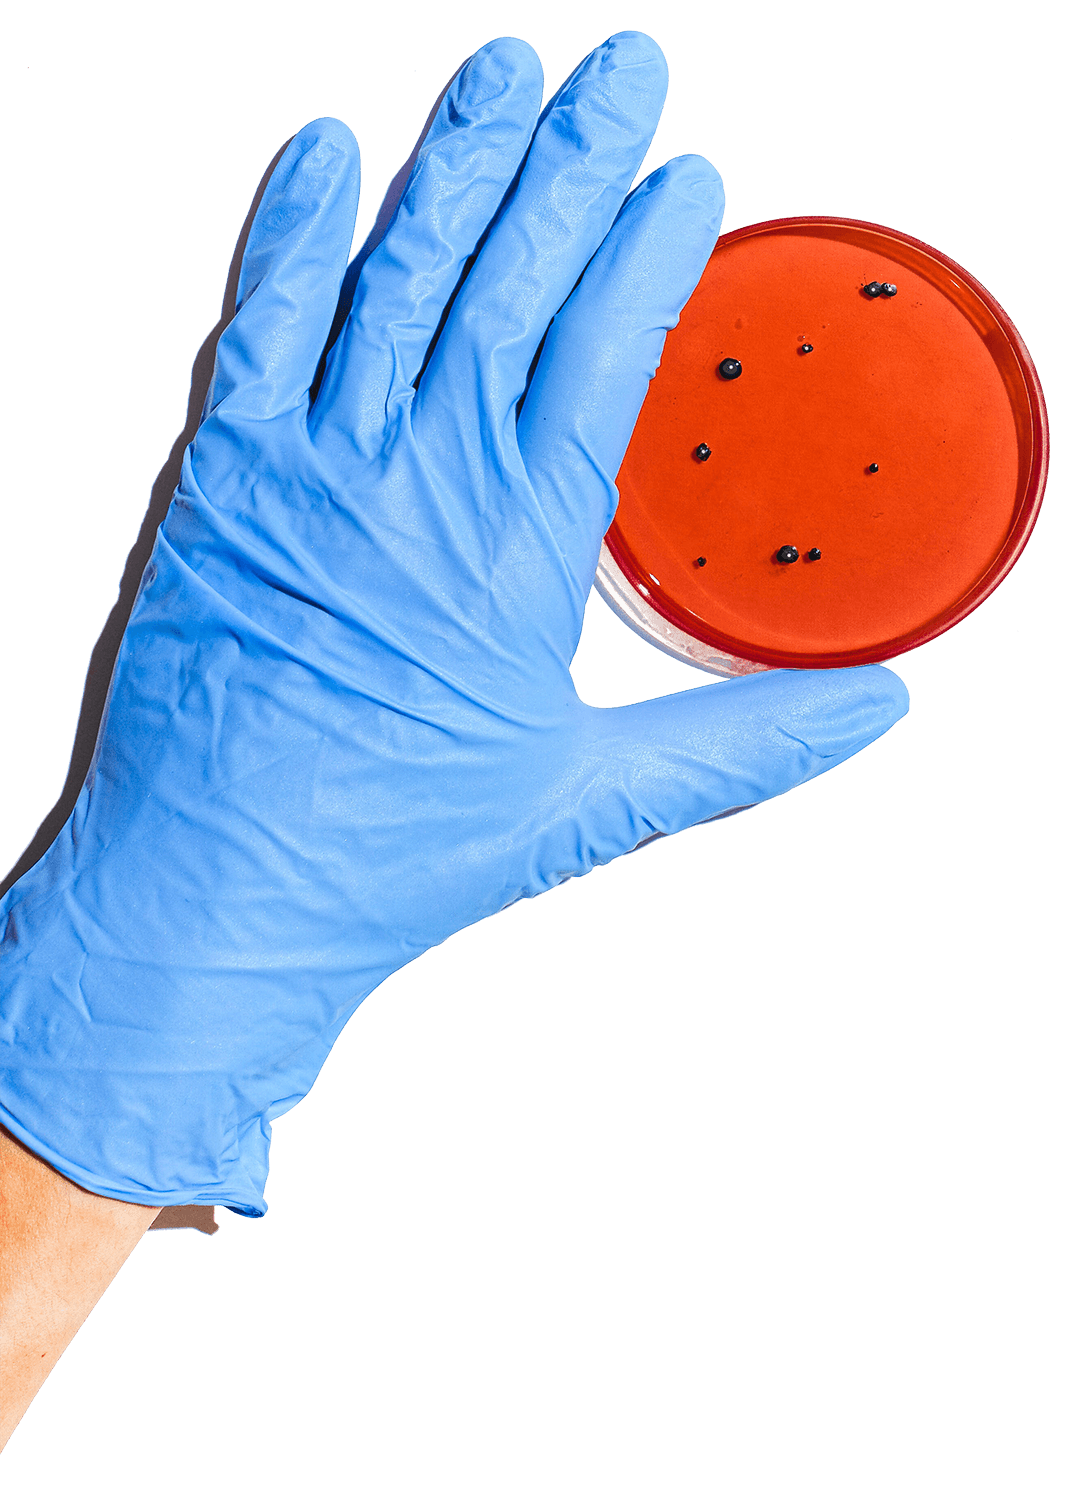 Photo of a petri dish